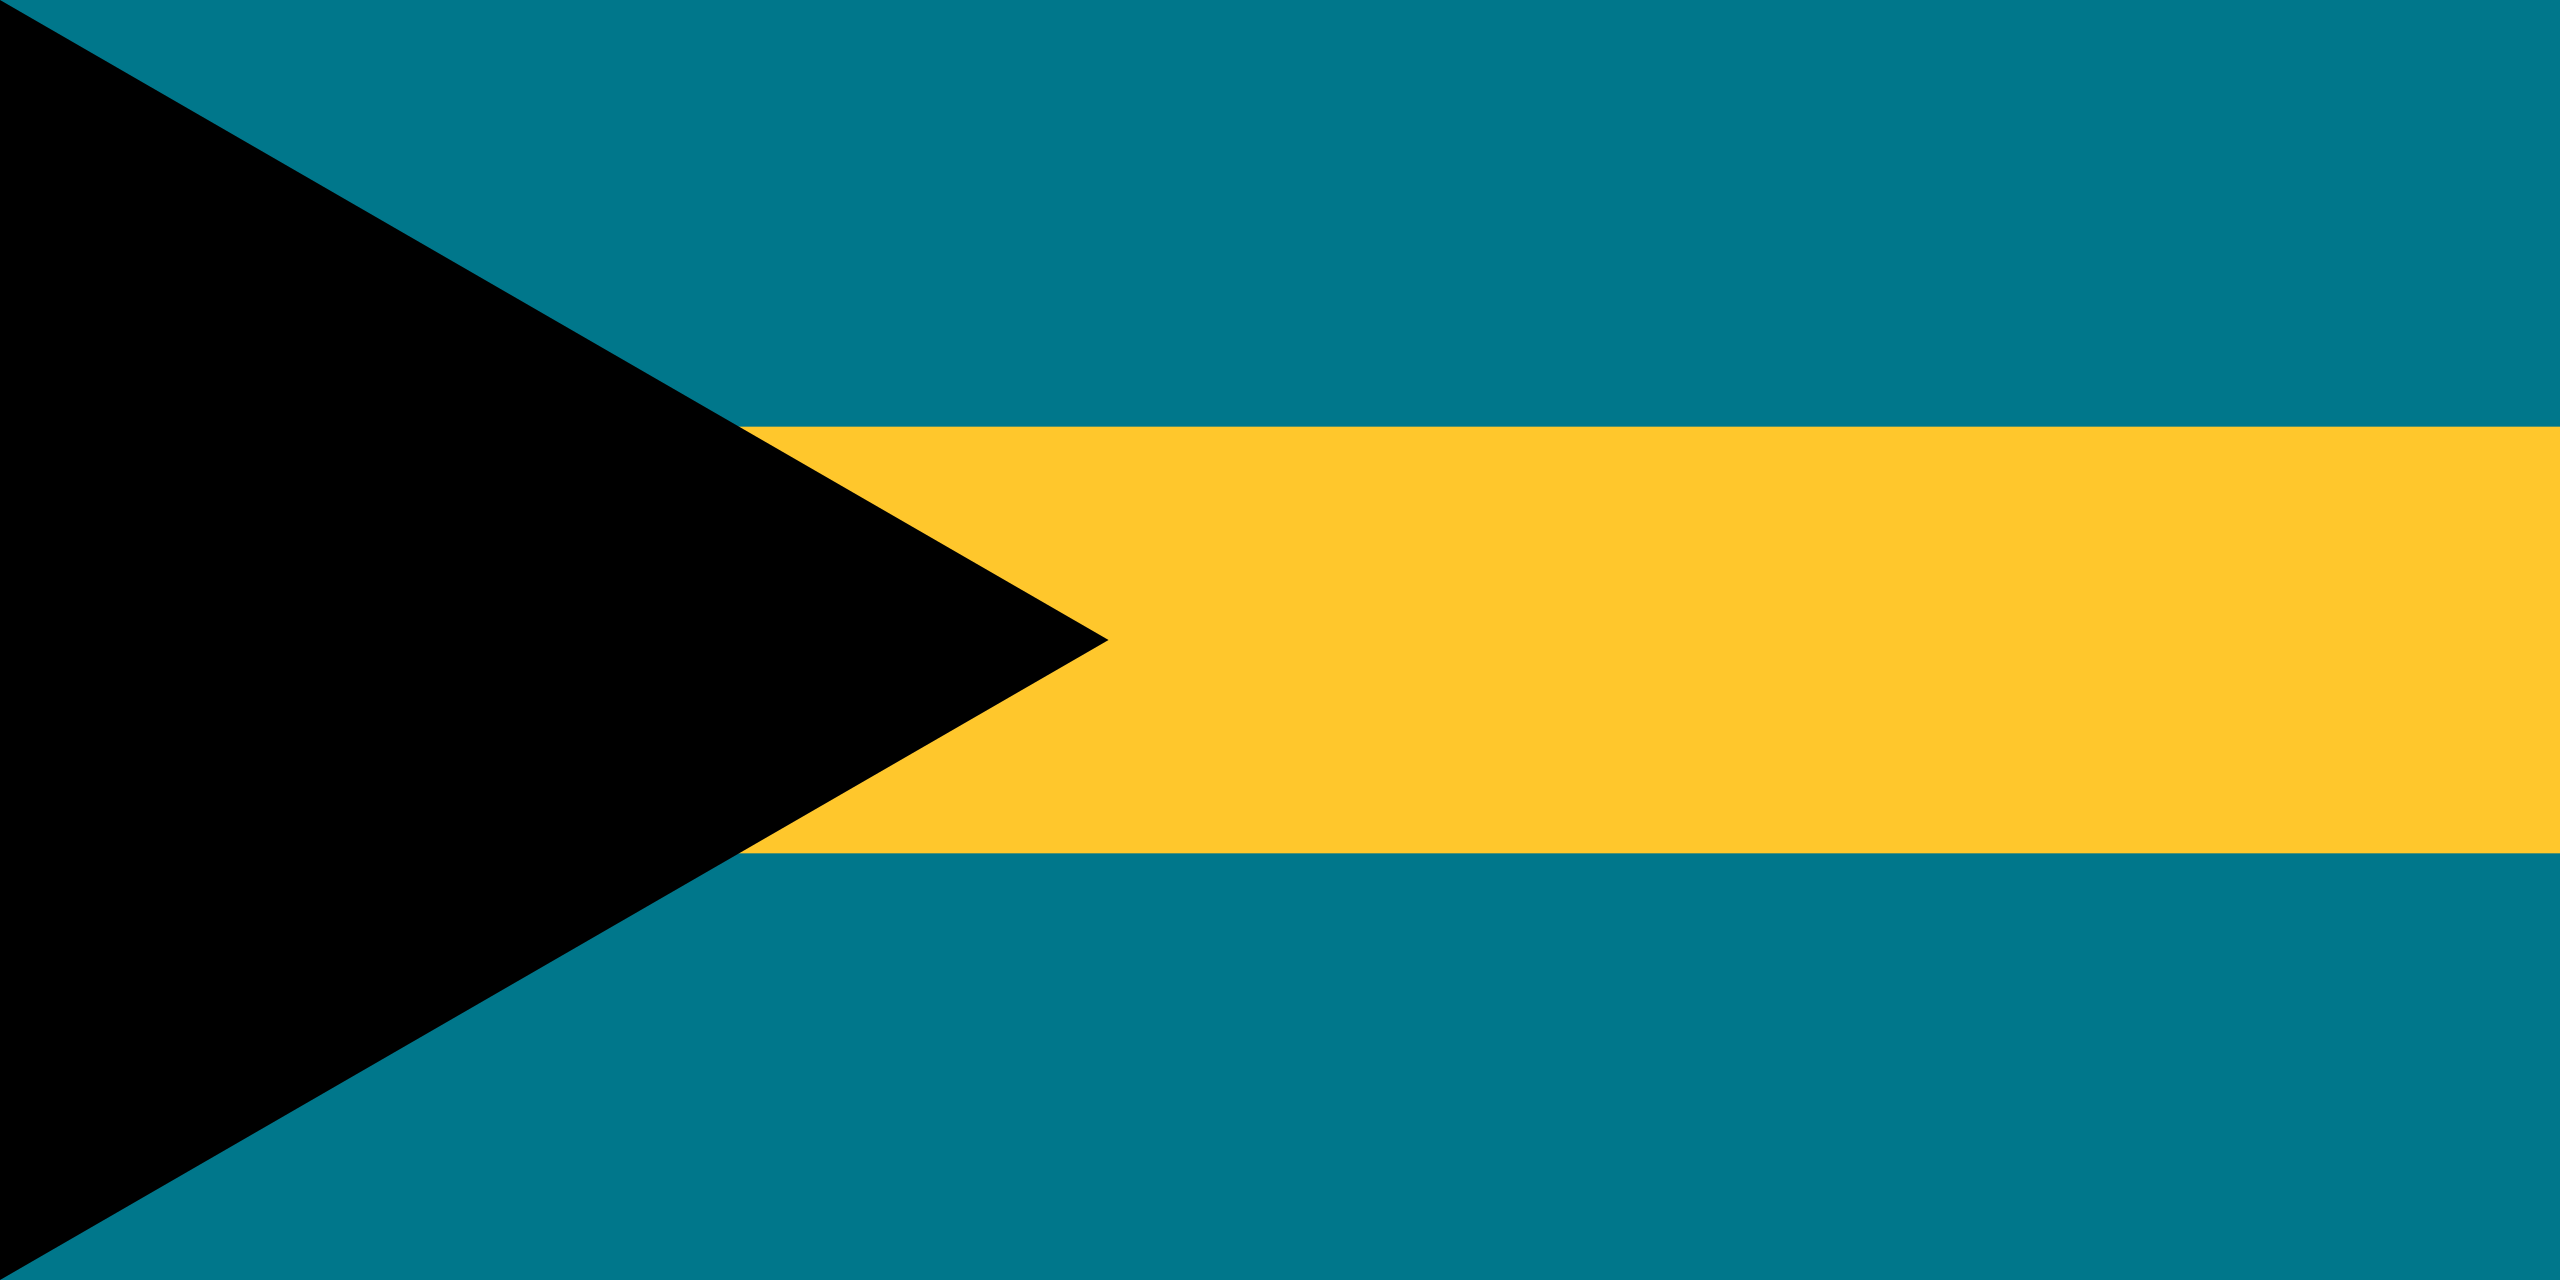 Bahaman lippu